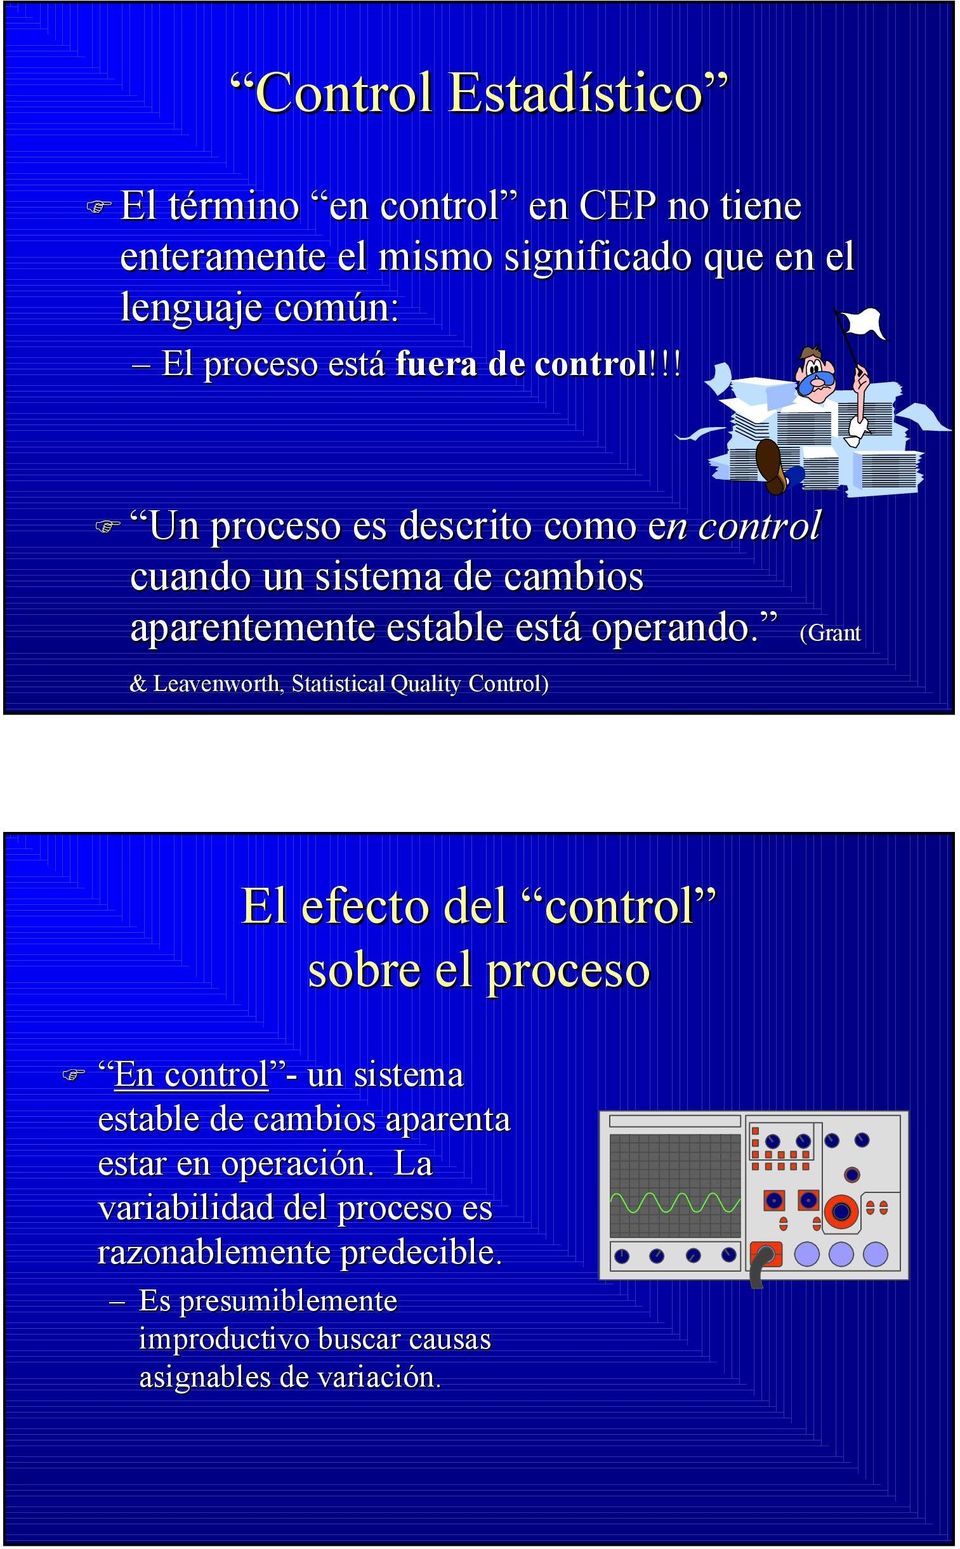 (Grant & Leavenworth, Statistical Quality Control) El efecto del control sobre el proceso En control - un sistema estable de cambios